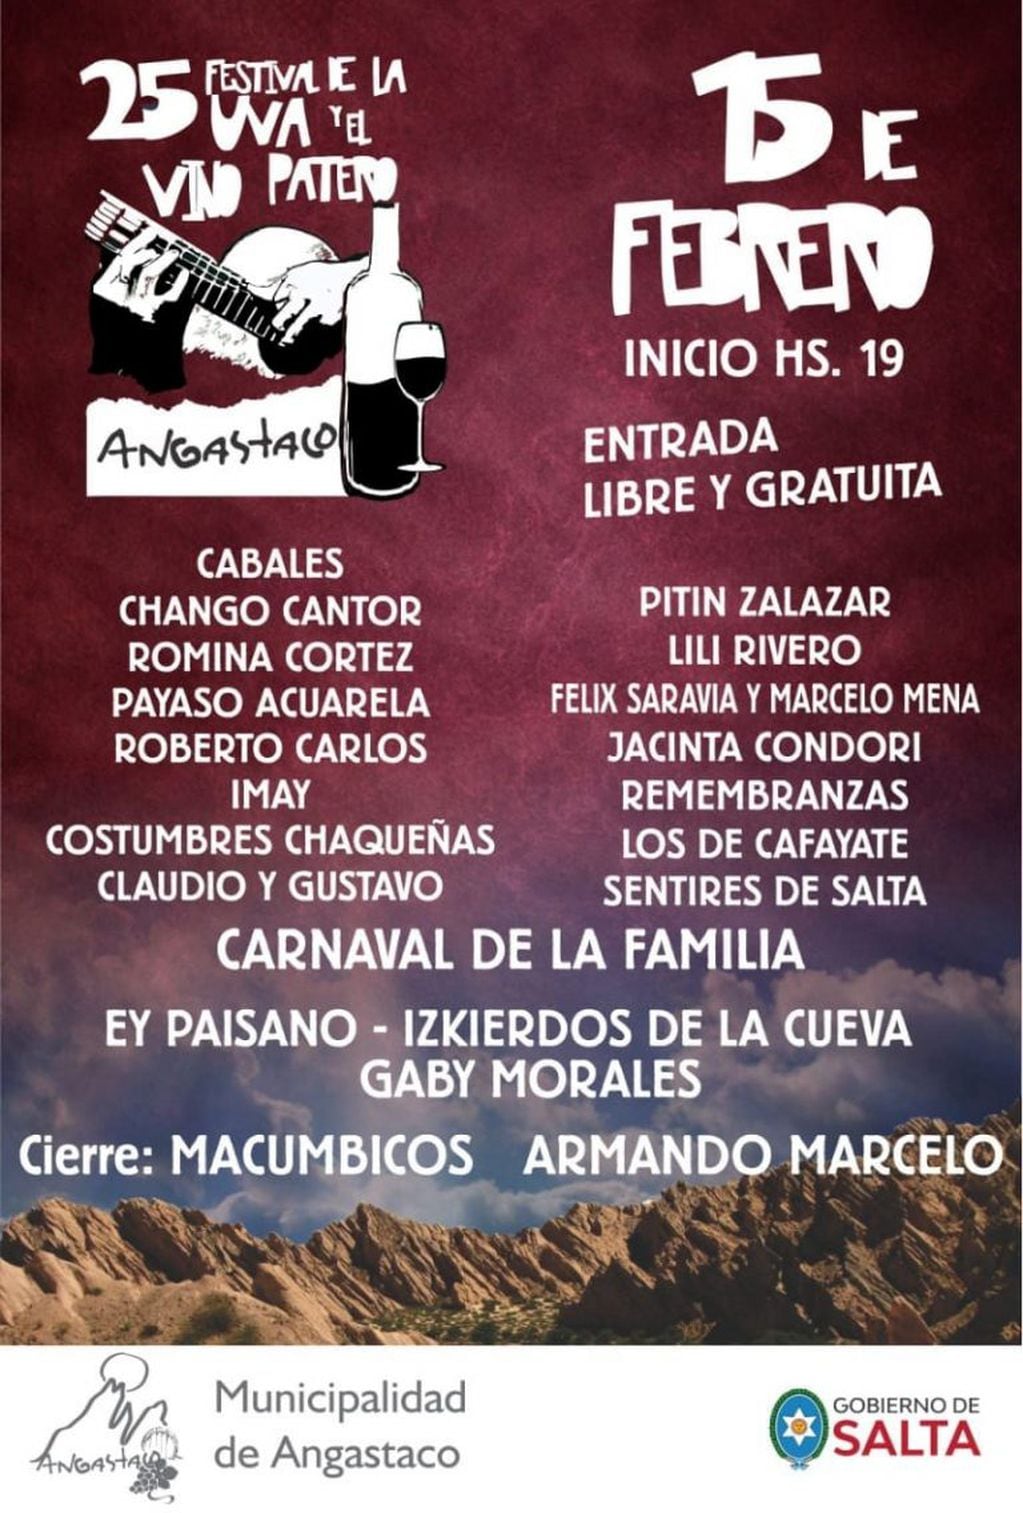 25º Festival de la Uva y el Vino Patero (Facebook Angastaco Turis)